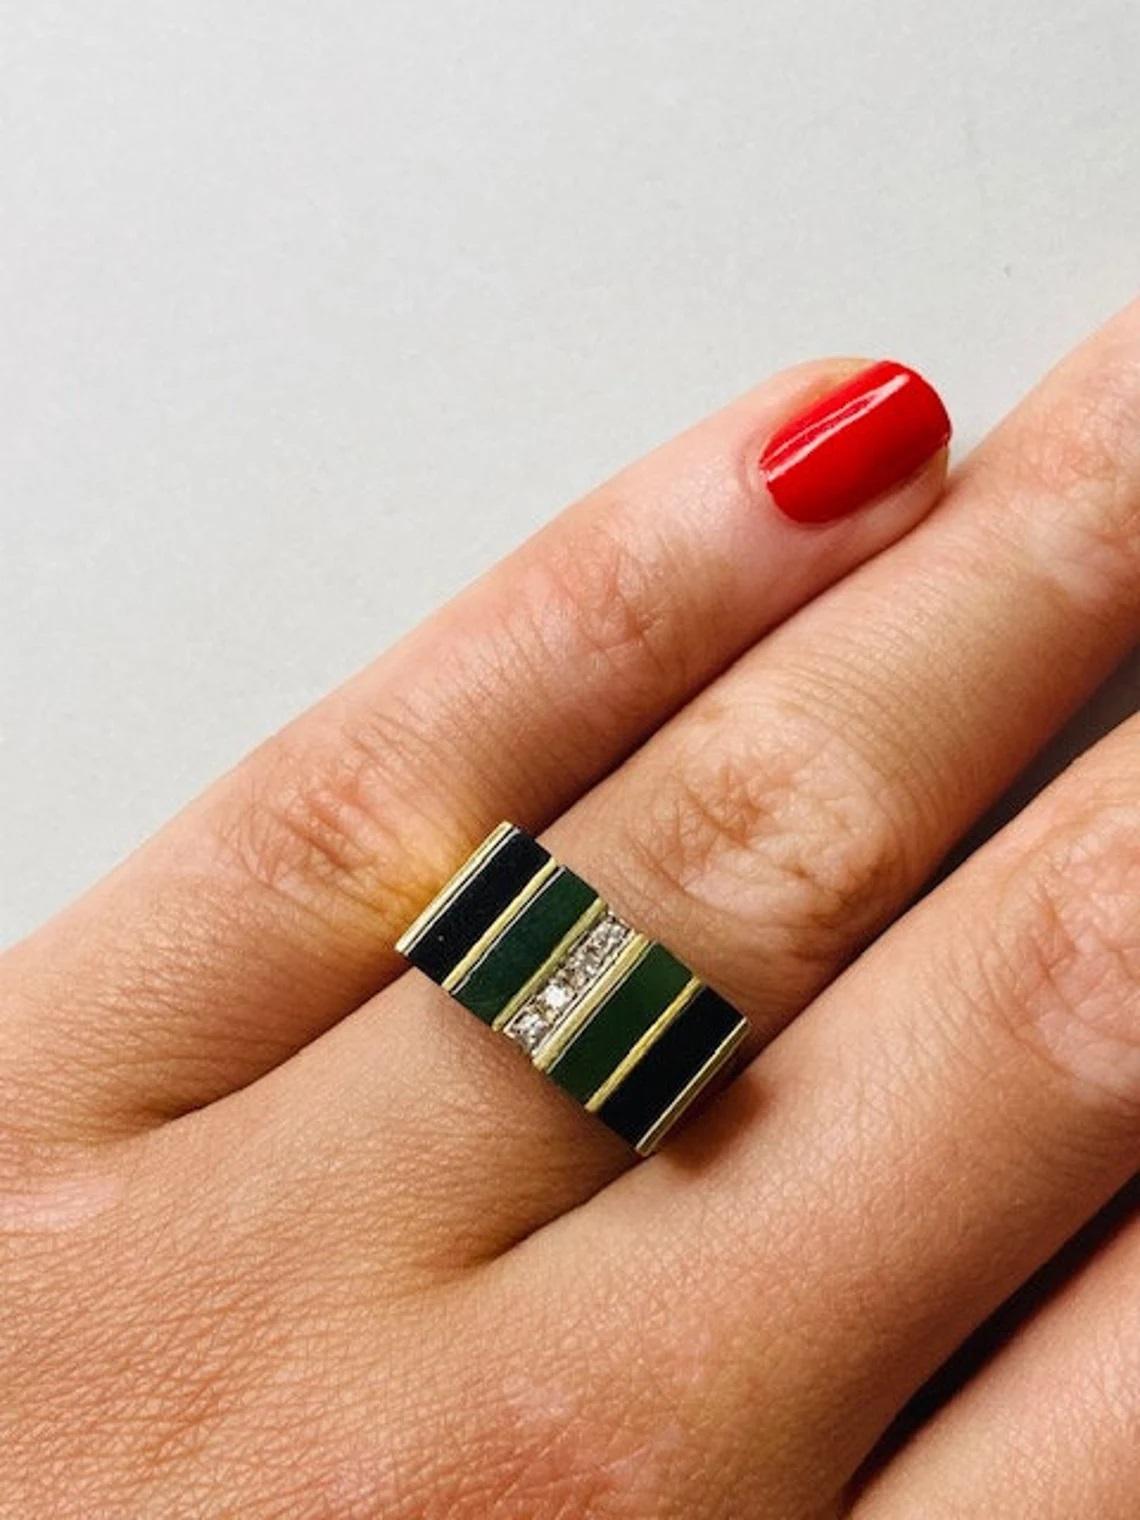 Vintage 14k Gold Malachit und Onyx gestreiften Ring mit Diamanten, One-of-a-kind

Dieser gestreifte Ring aus Onyx und Malachit im Vintage-Stil mit einer Reihe strahlender weißer Diamanten ist einzigartig und sehr tragbar. Die wunderschön